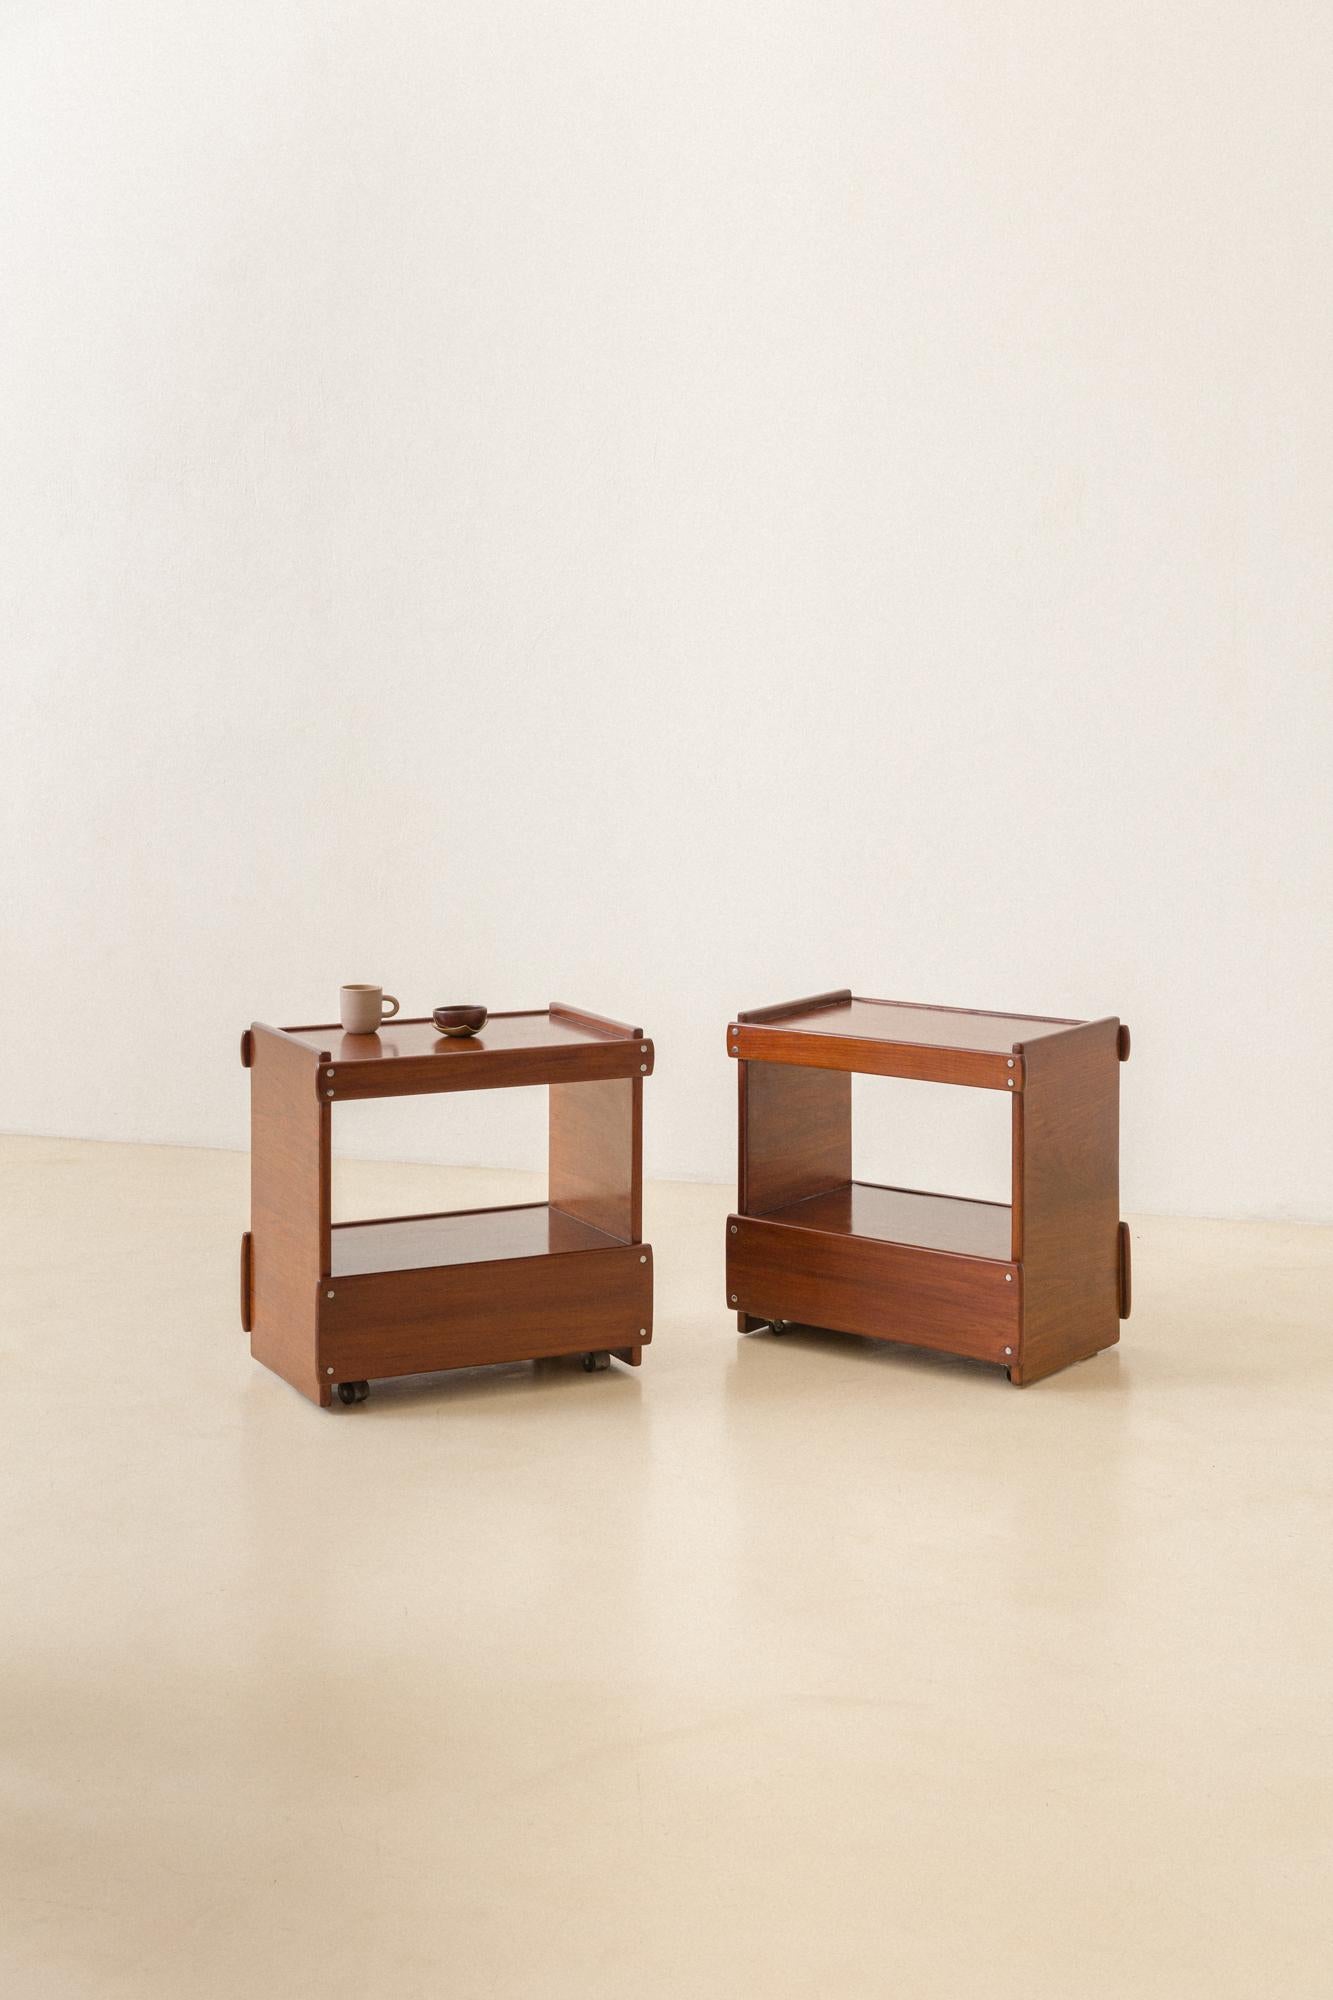 Dieser Nachttisch wurde von Sergio Rodrigues (1914-2012) entworfen und in den 1960er Jahren hergestellt. Dem gleichen strukturellen Gedanken folgend wie andere Stücke von Rodrigues, wie das Sofa 